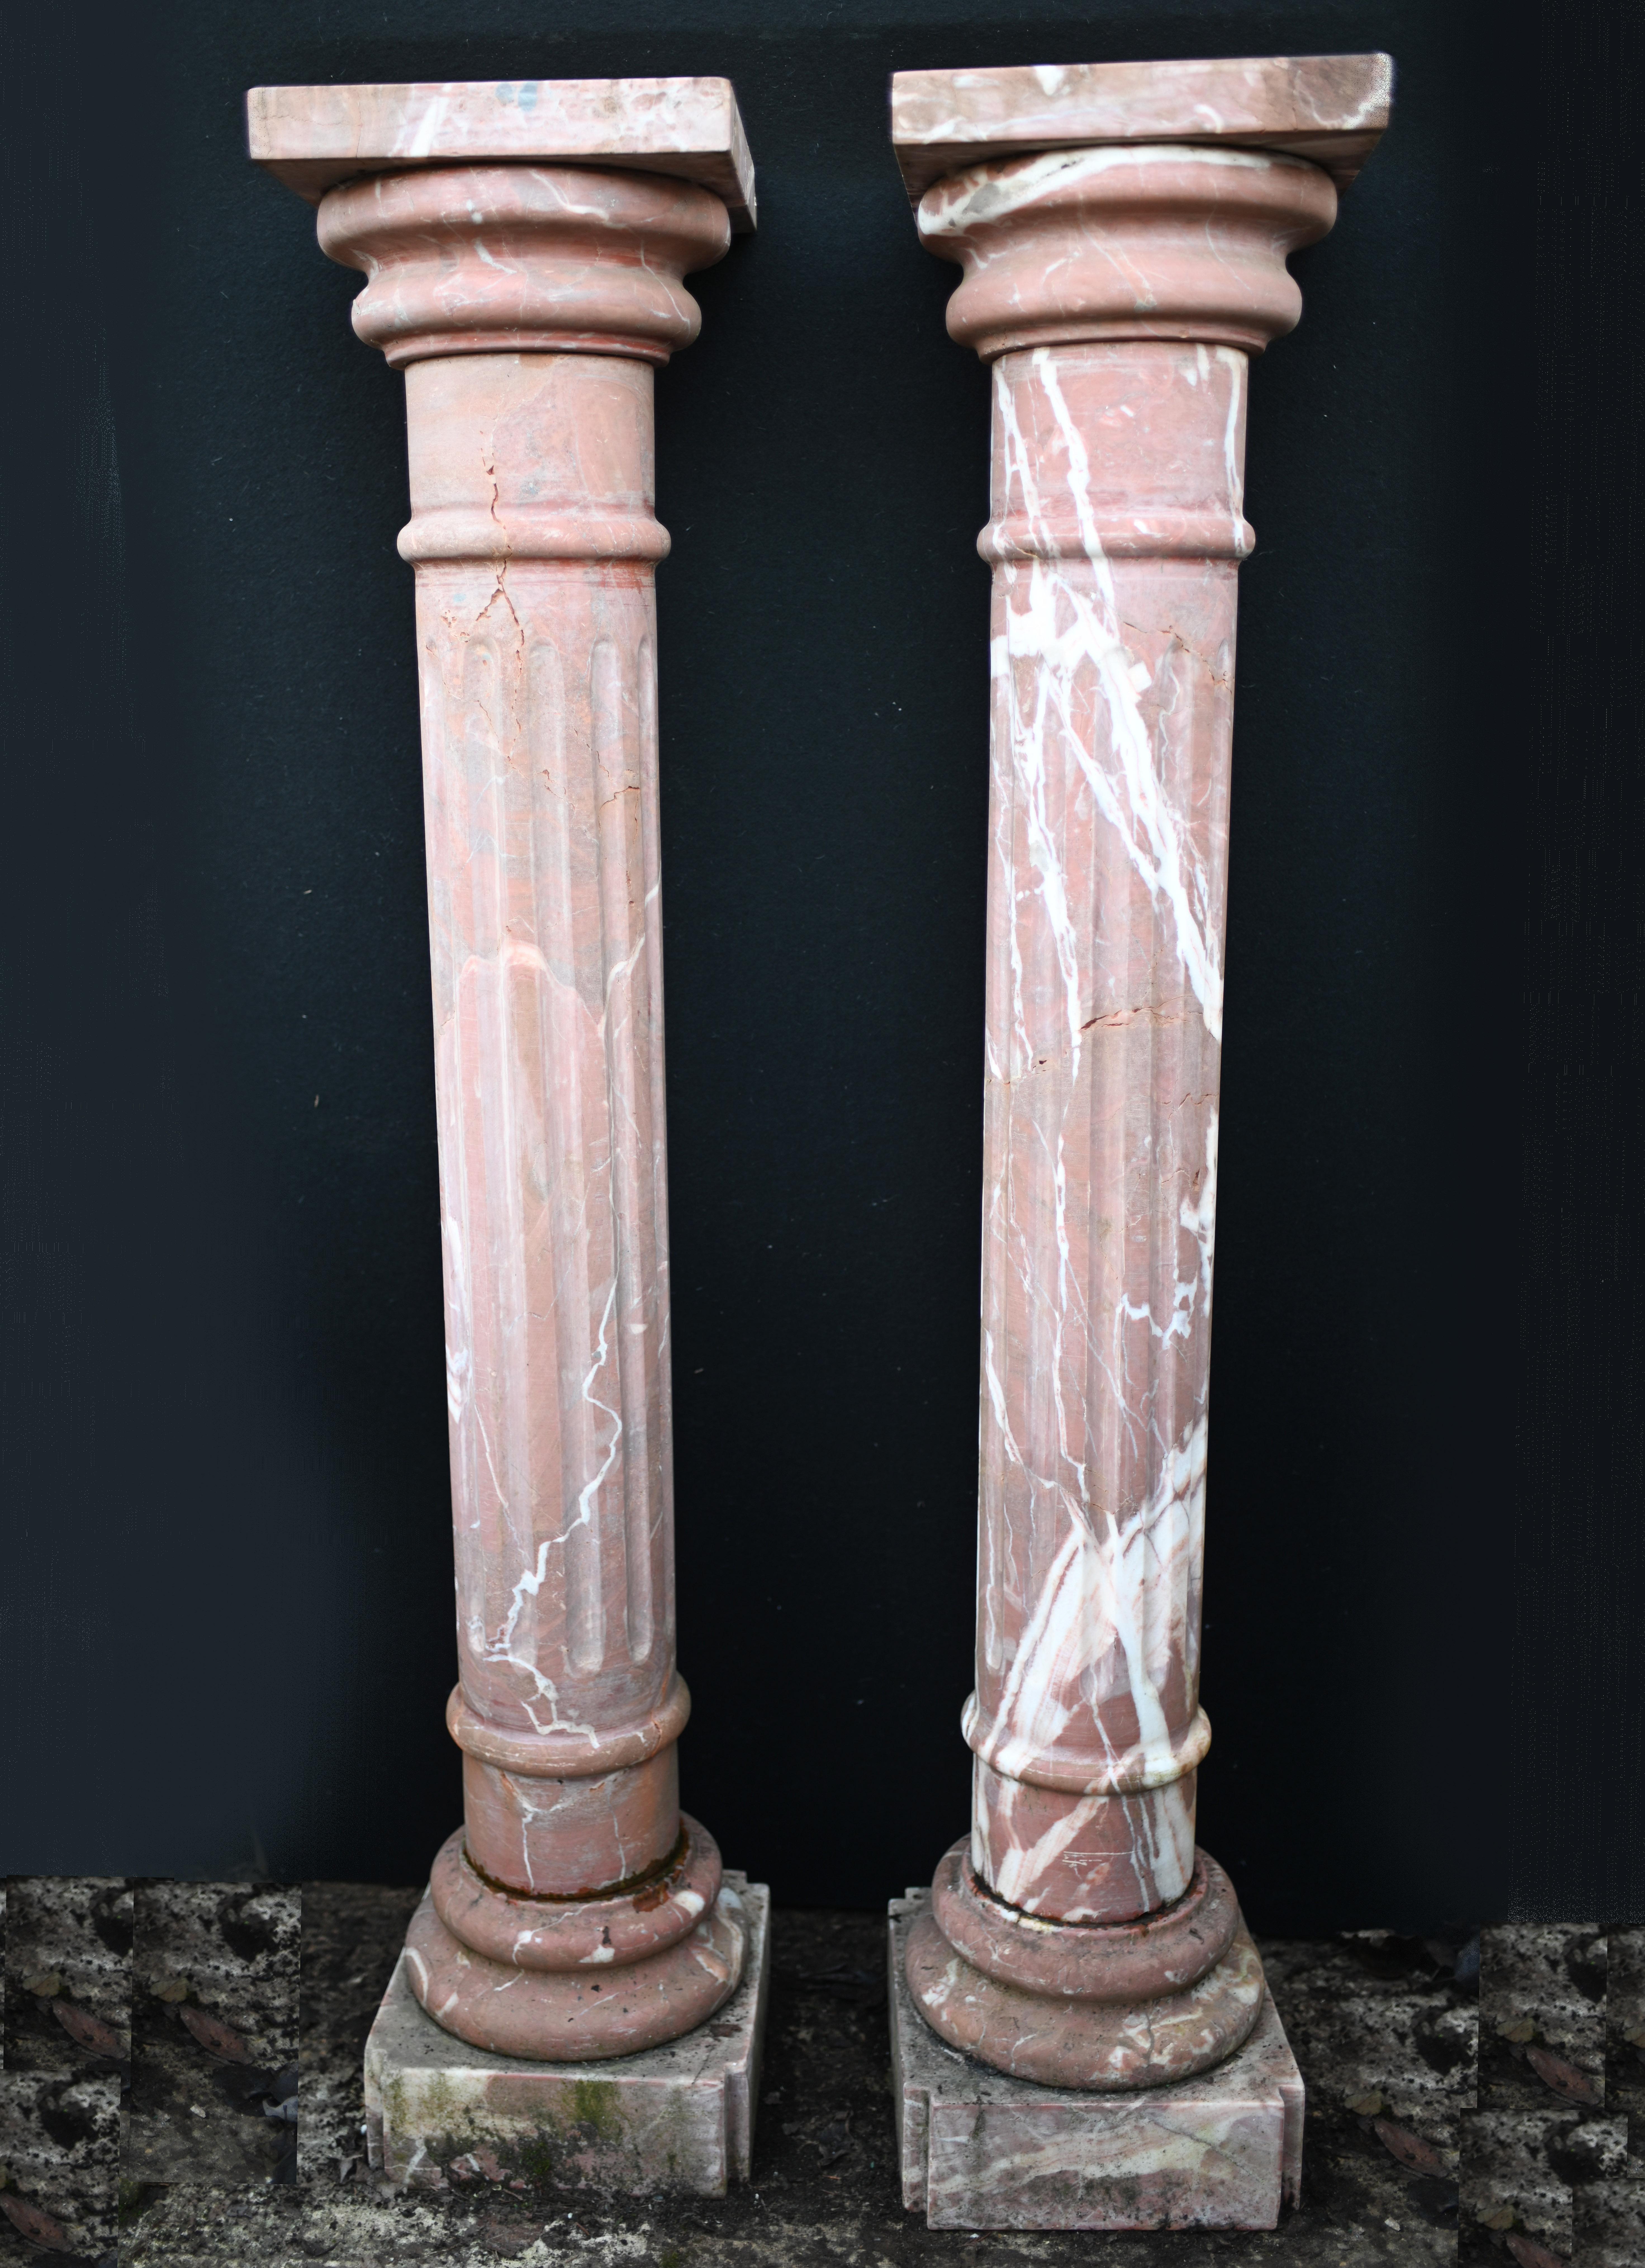 Cooles Paar italienischer Marmorsockelsäulen
Hervorragend geeignet, um dekorative Stücke wie Büsten oder Vasen auszustellen
Klassisch geriffelt und mit toller Farbgebung des Steins
Kann drinnen oder draußen leben
Einige unserer Artikel sind in